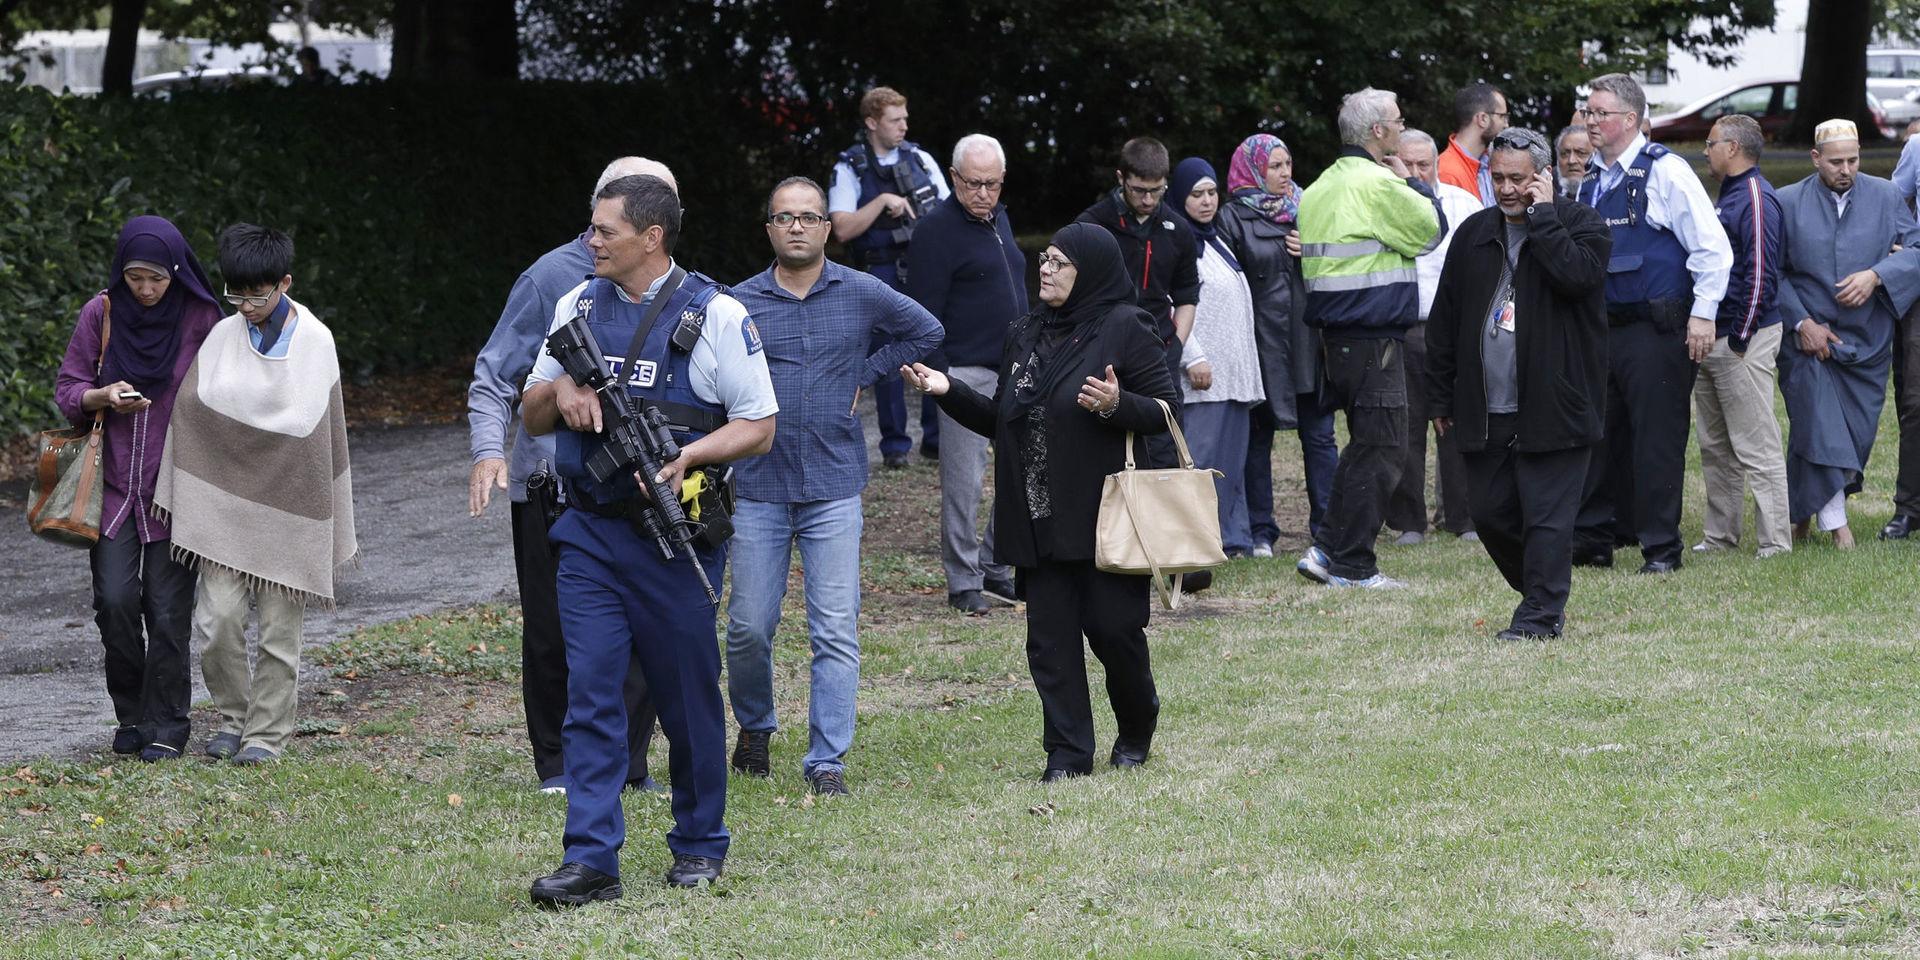 Polis eskorterar iväg personer från platsen för attackerna i Christchurch.